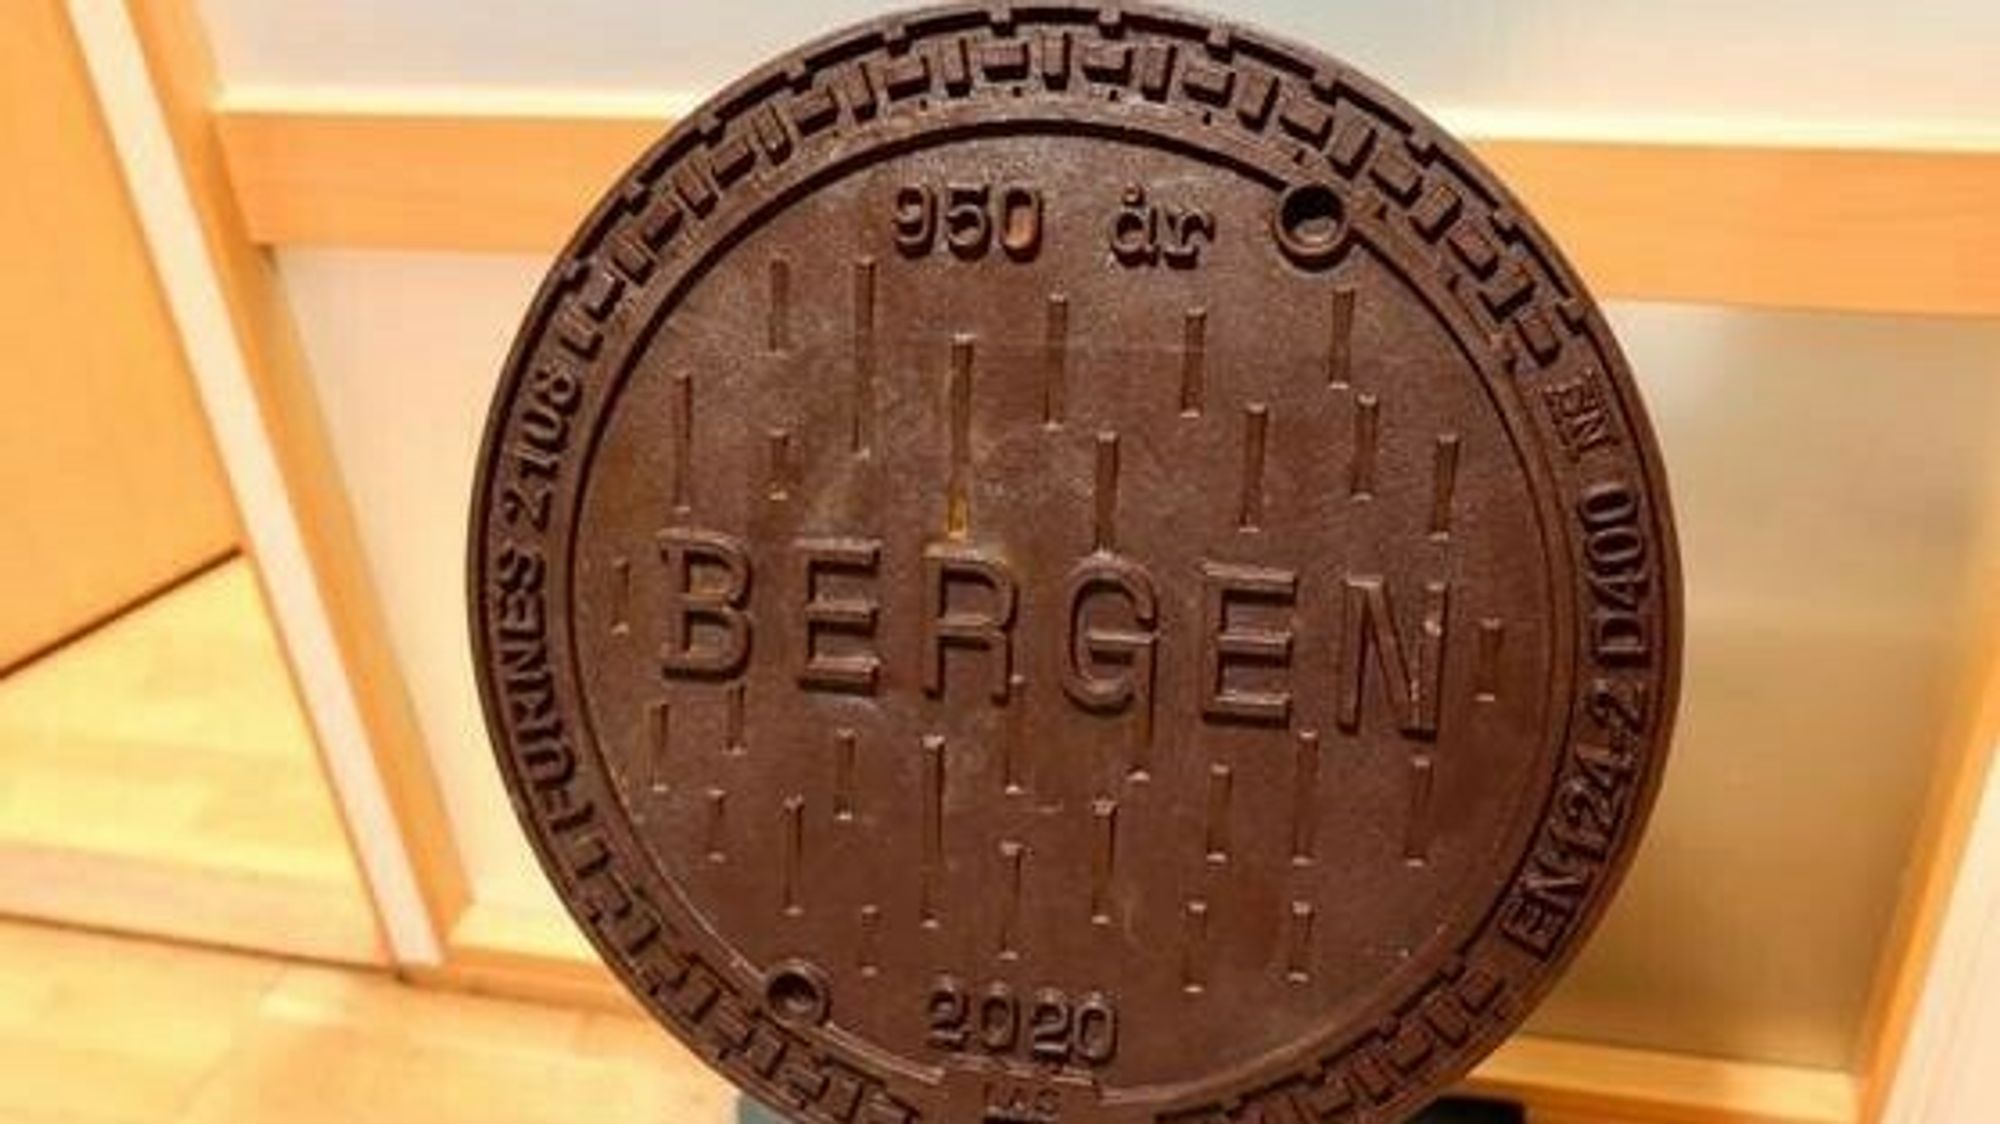 Bergen kommune bestilte 500 nye jubileumskumlokk i februar i år. Motivet er såklart regndråper.